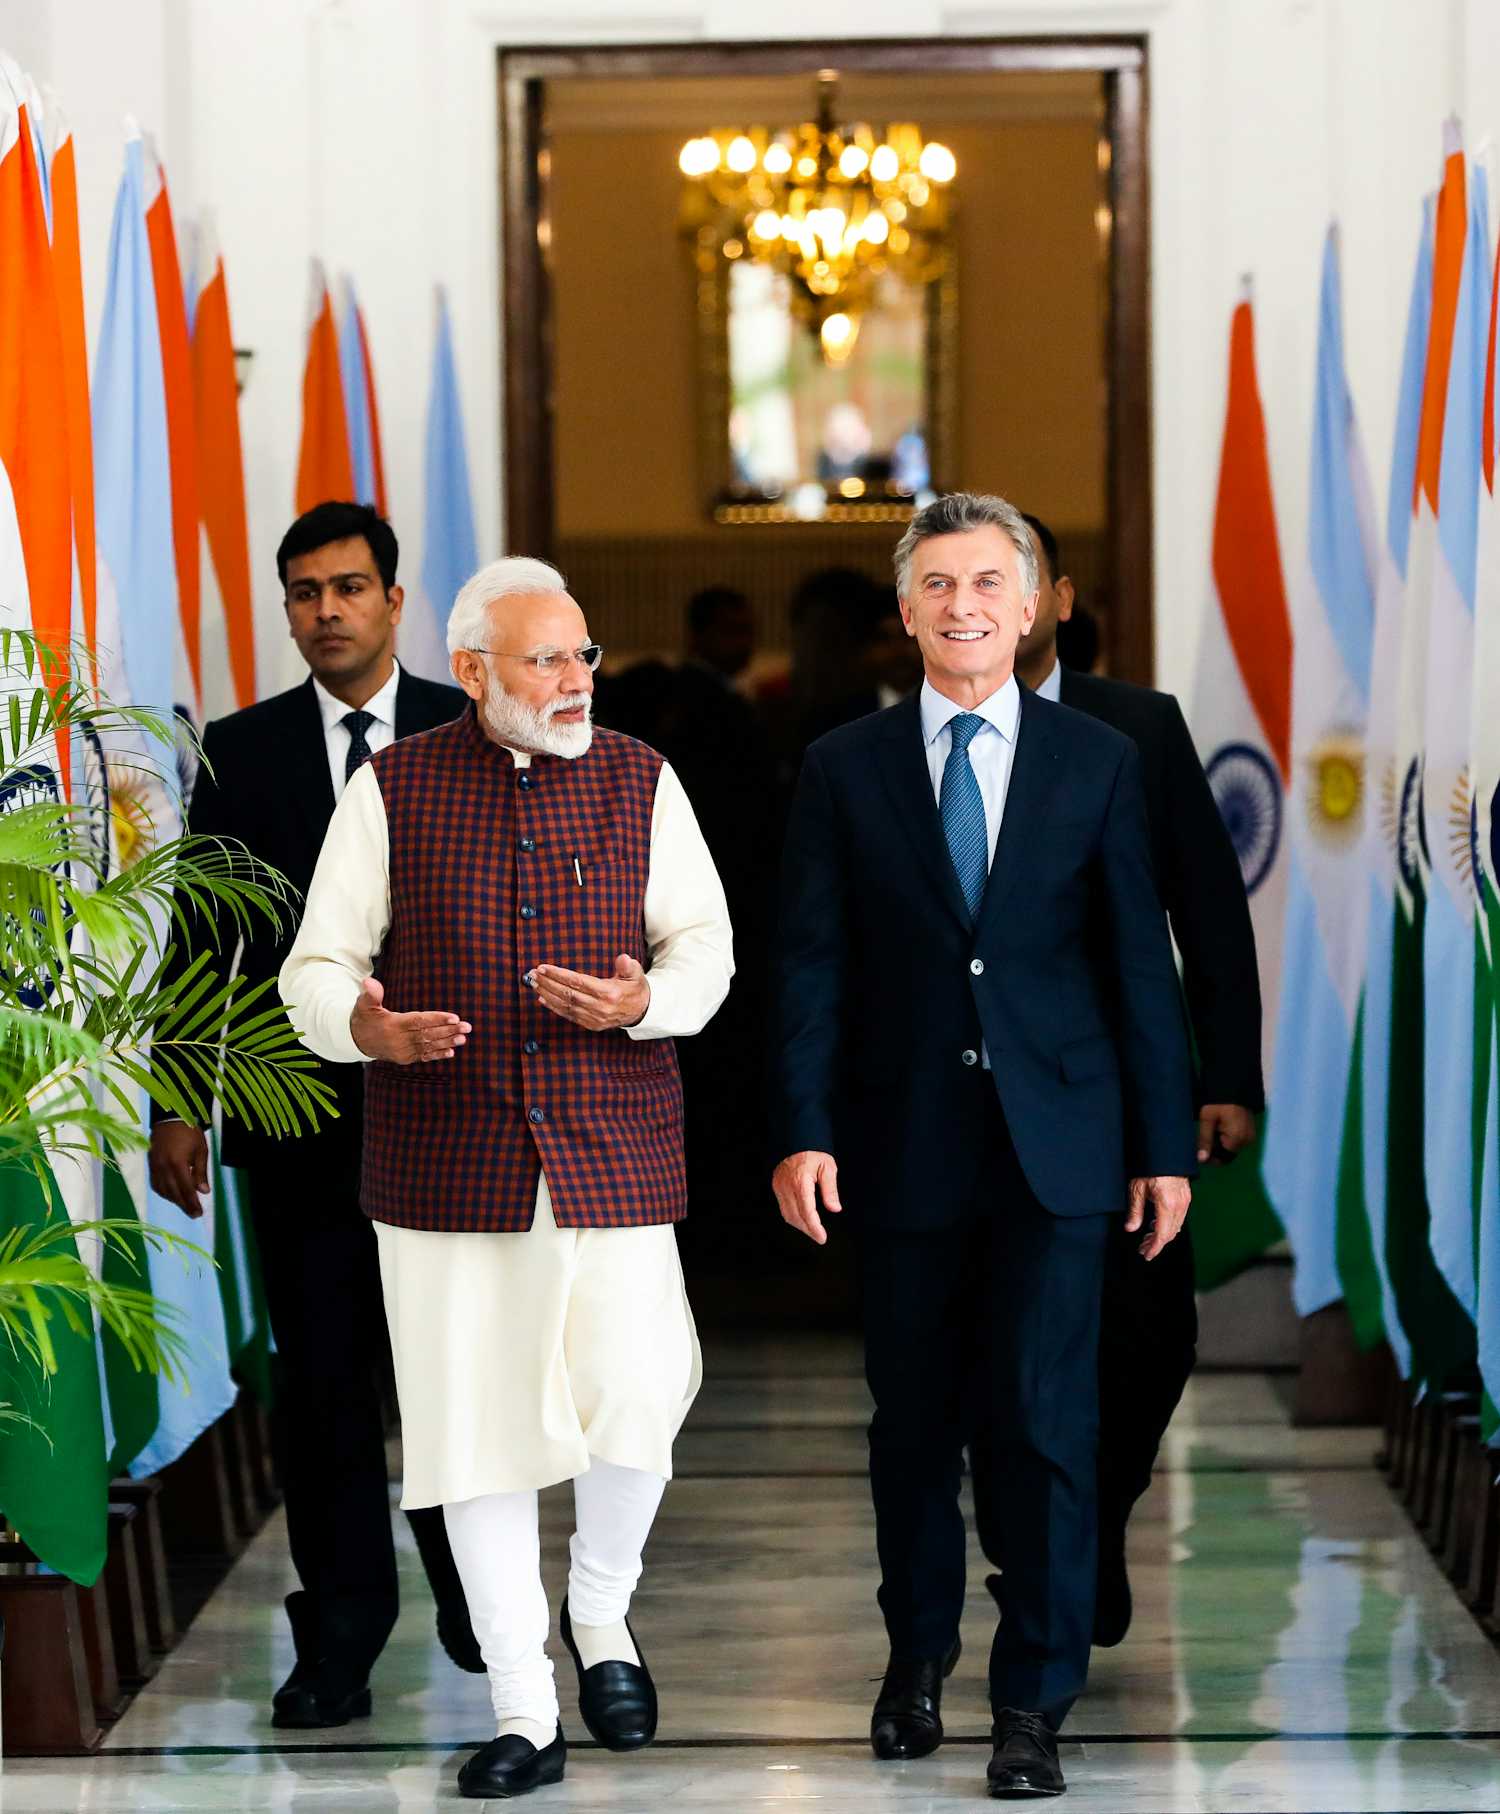 En India, Macri destacó que Argentina es “un proveedor confiable y competitivo”